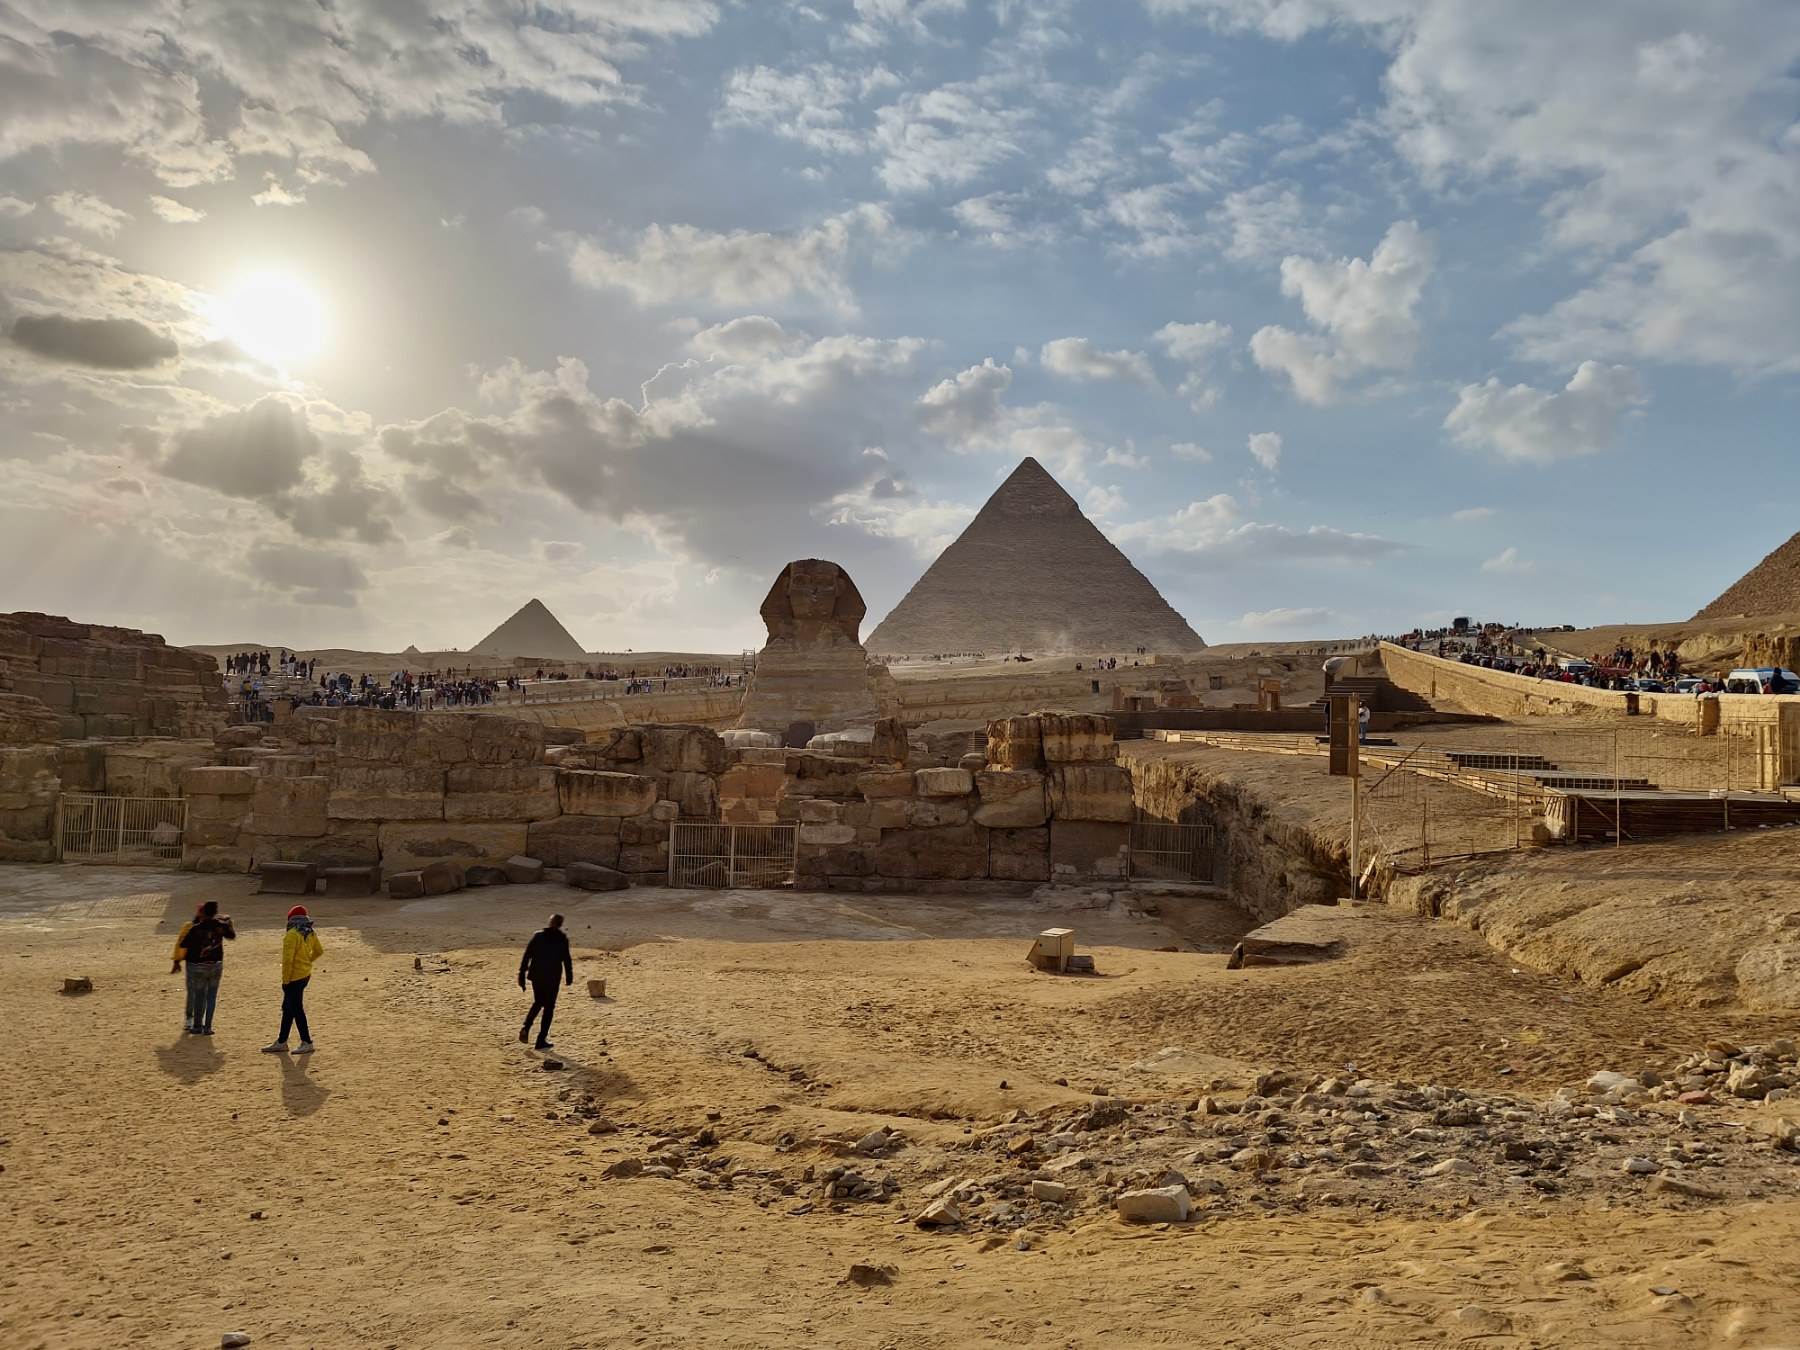  Ljetovanje u Egiptu: Izleti, smještaj, cijene i znamenitosti 